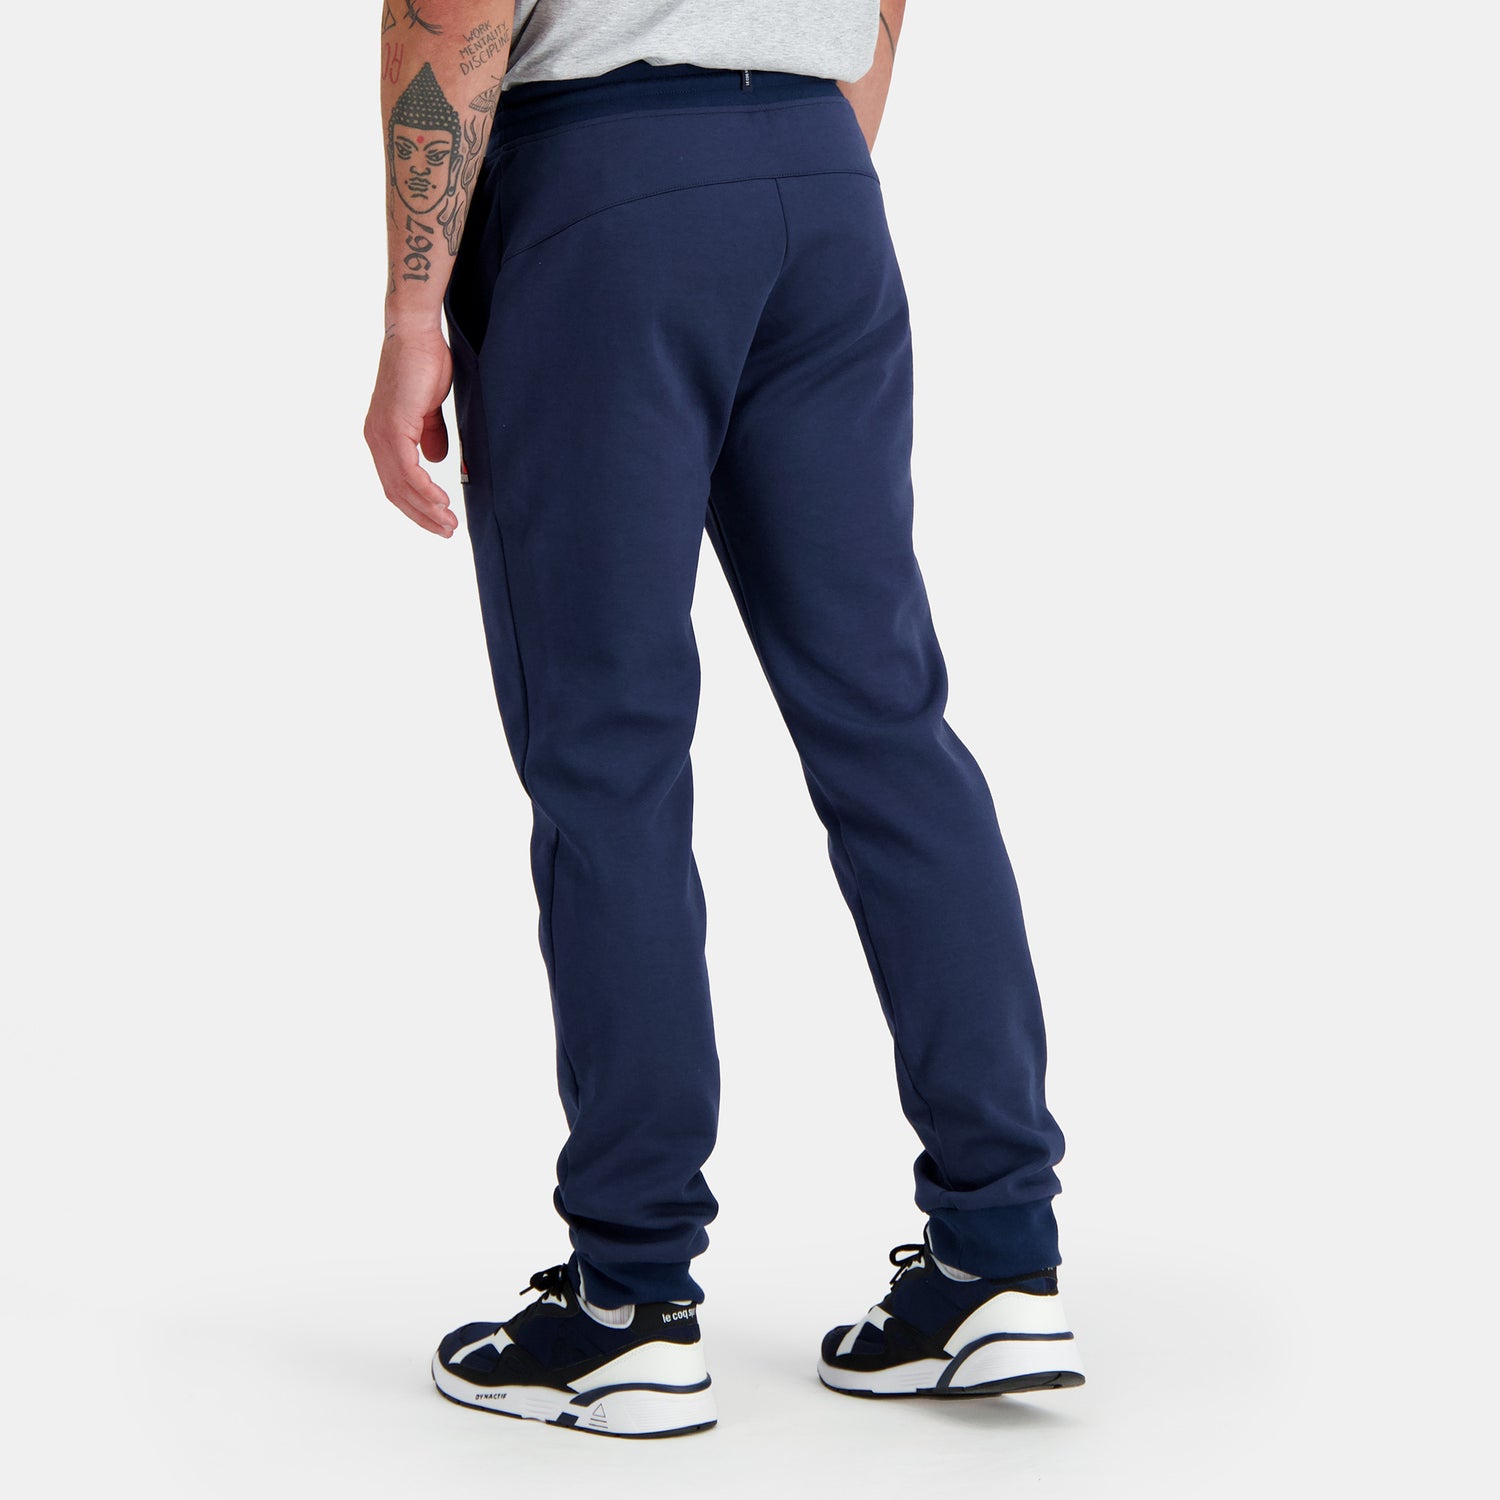 2310500-ESS Pant Slim N°1 M dress blues  | Trousers Slim for men